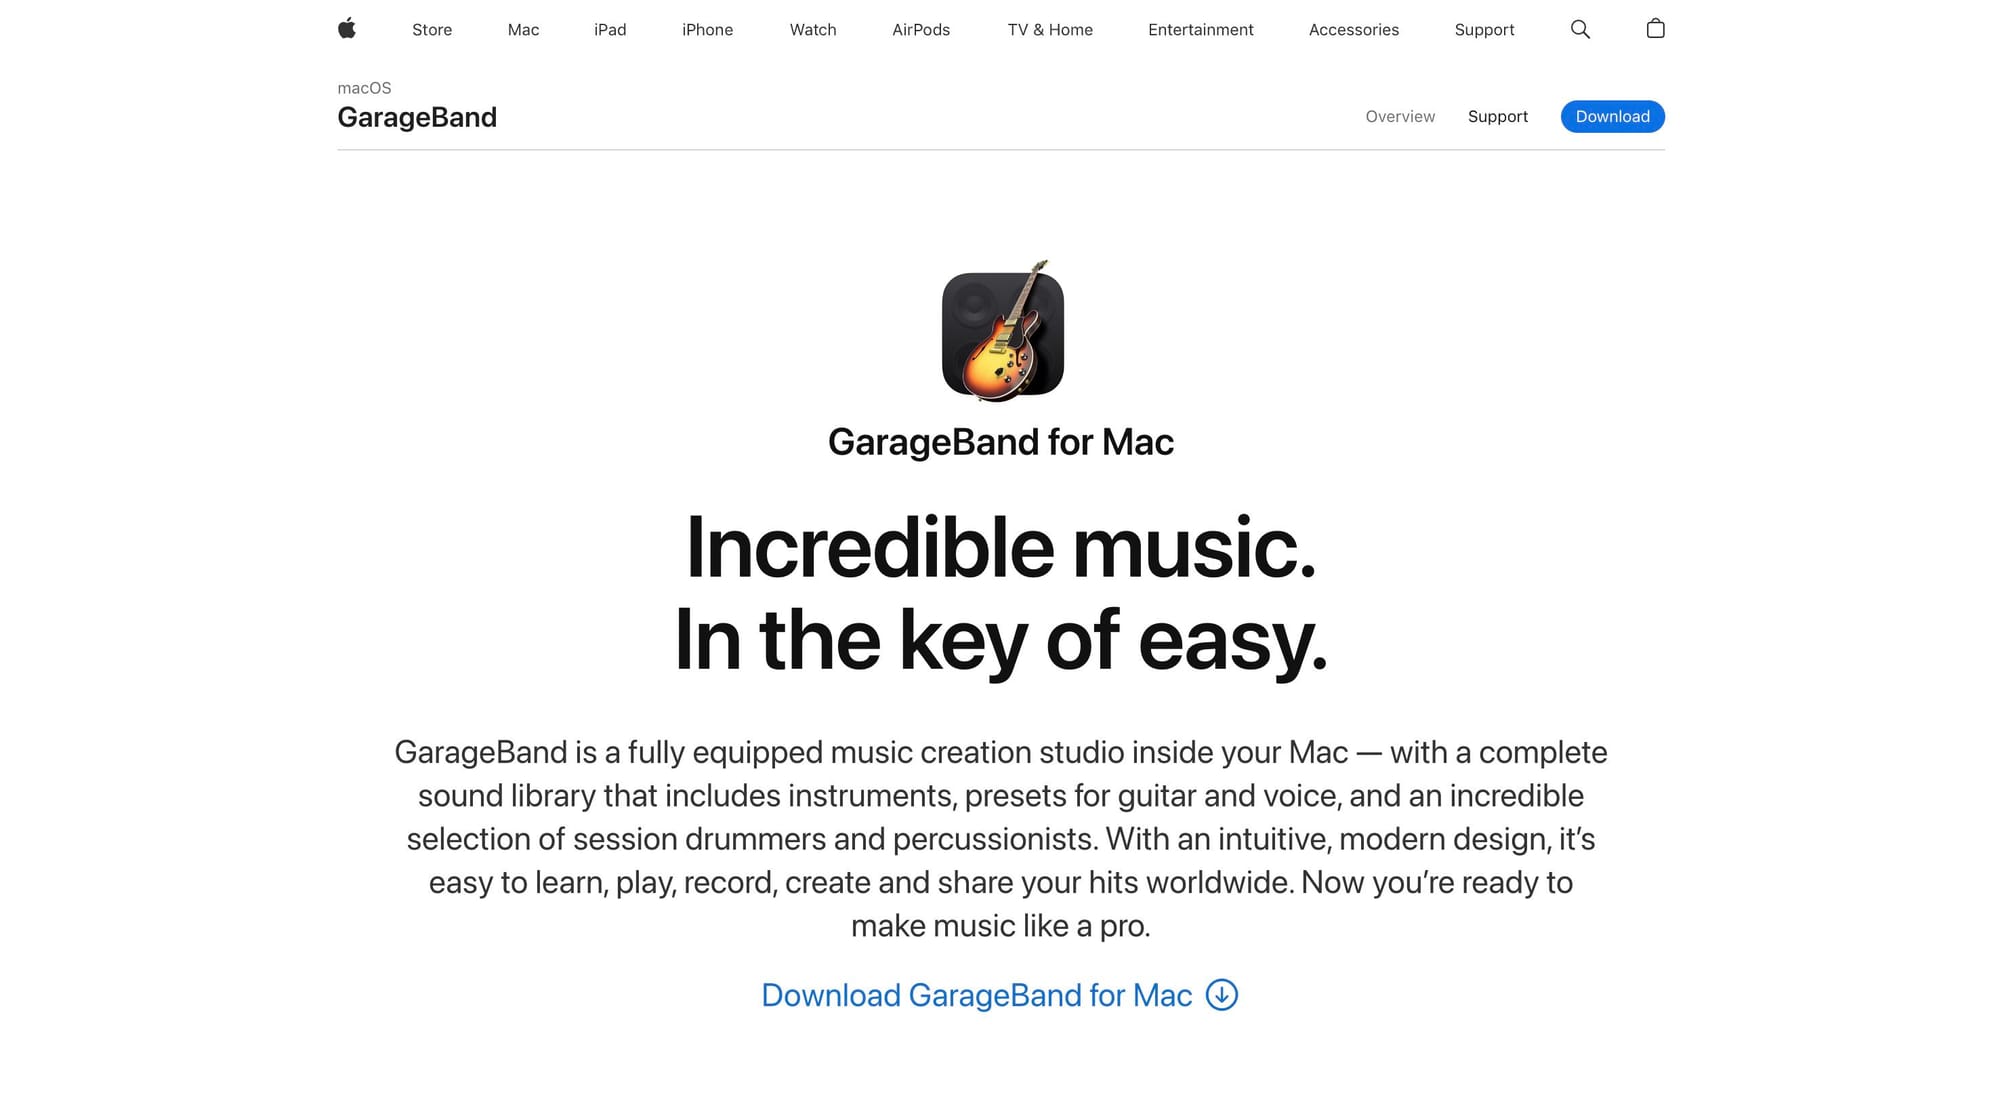 GarageBand's homepage